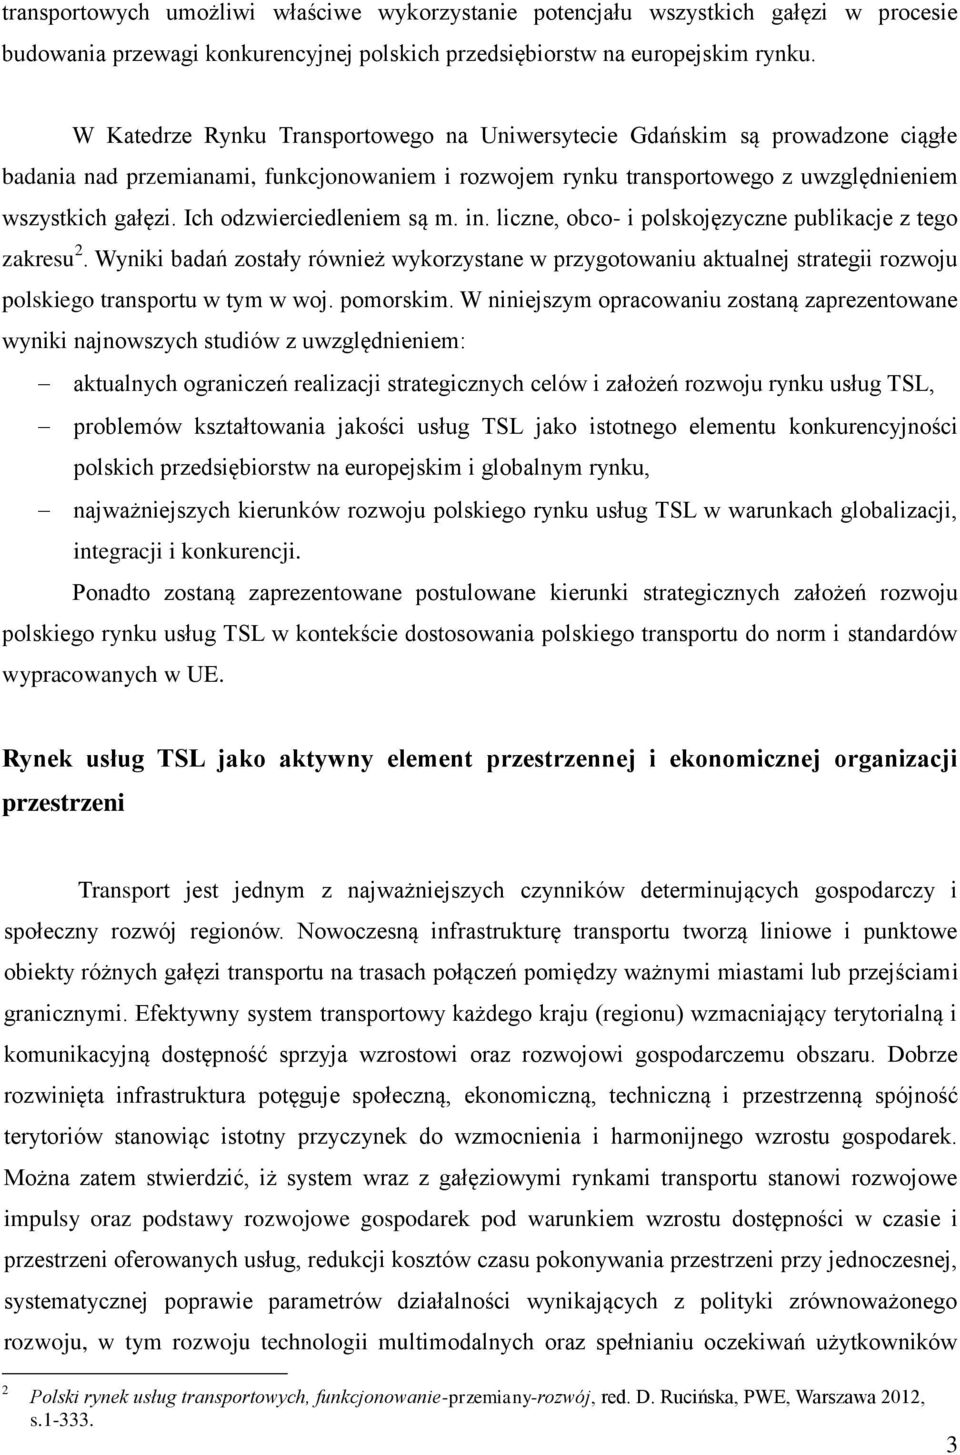 Ich odzwierciedleniem są m. in. liczne, obco- i polskojęzyczne publikacje z tego zakresu 2.